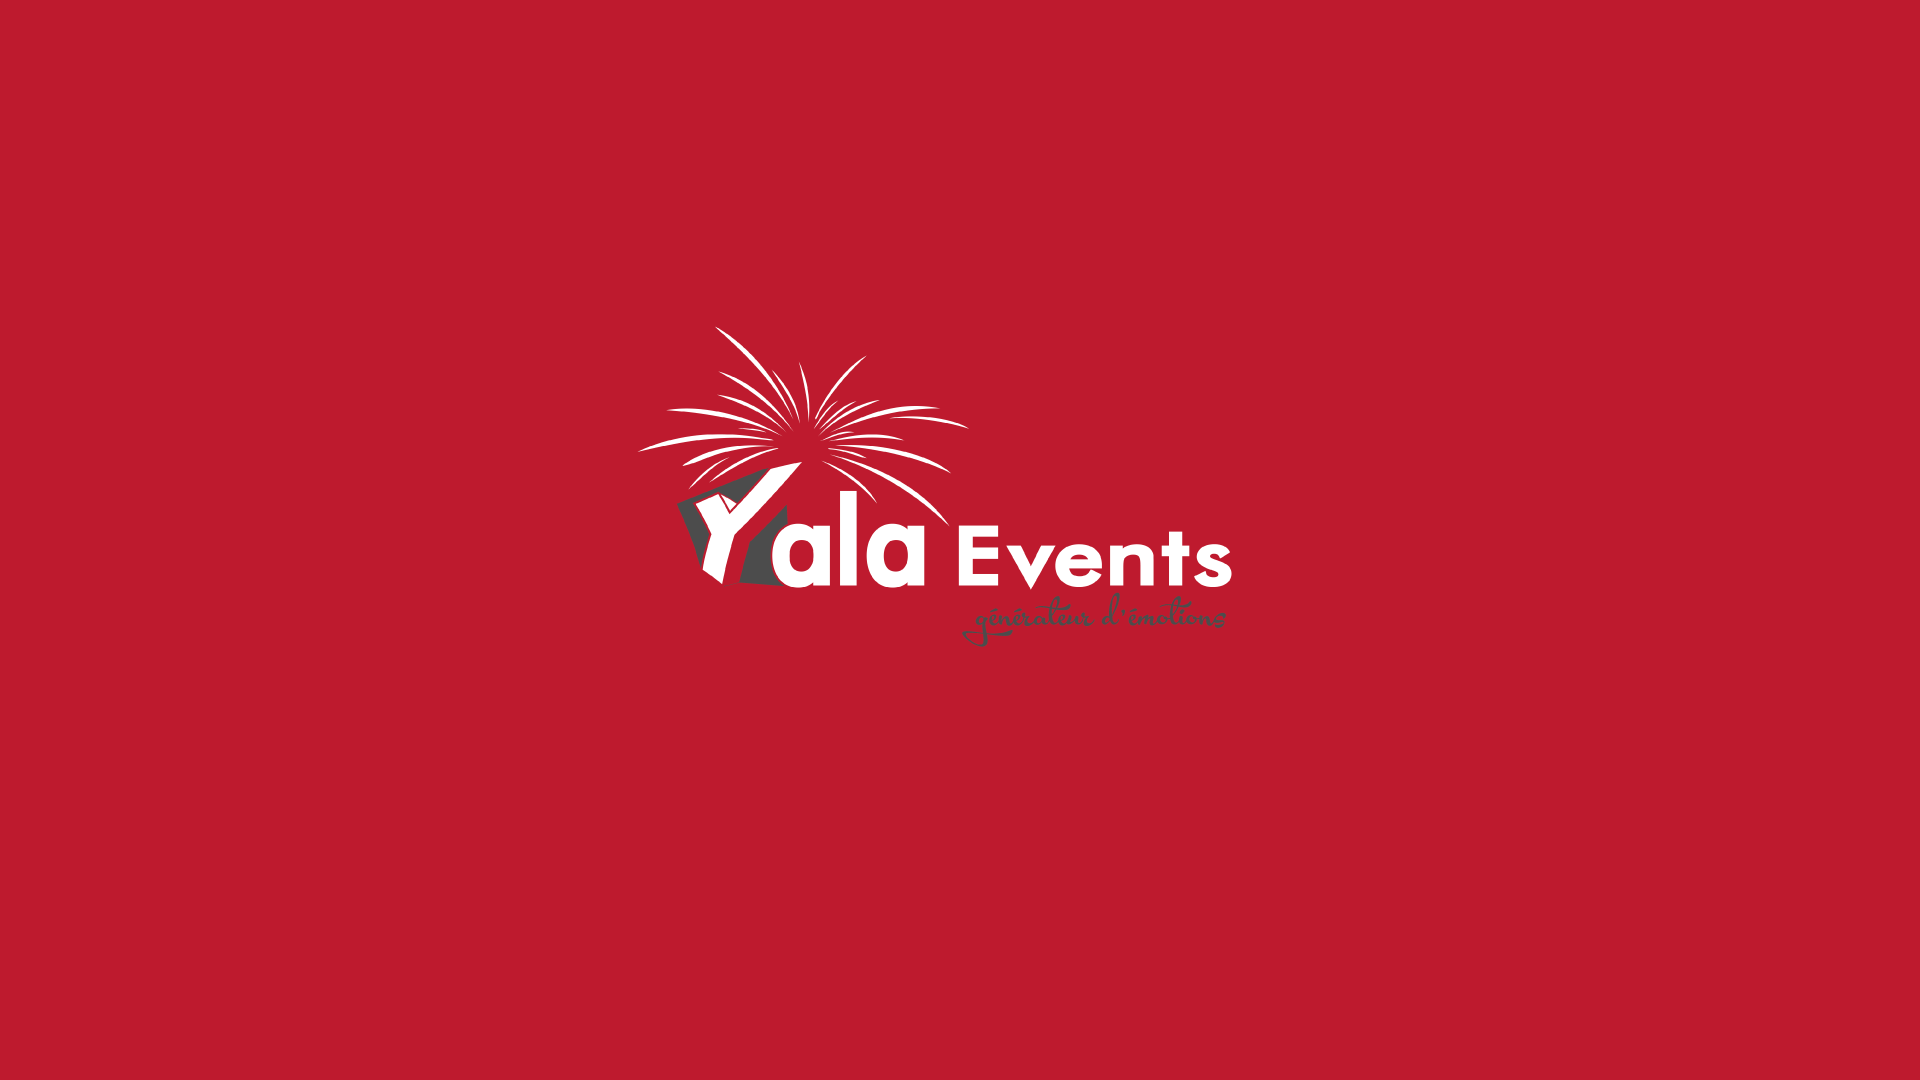 Yala Events